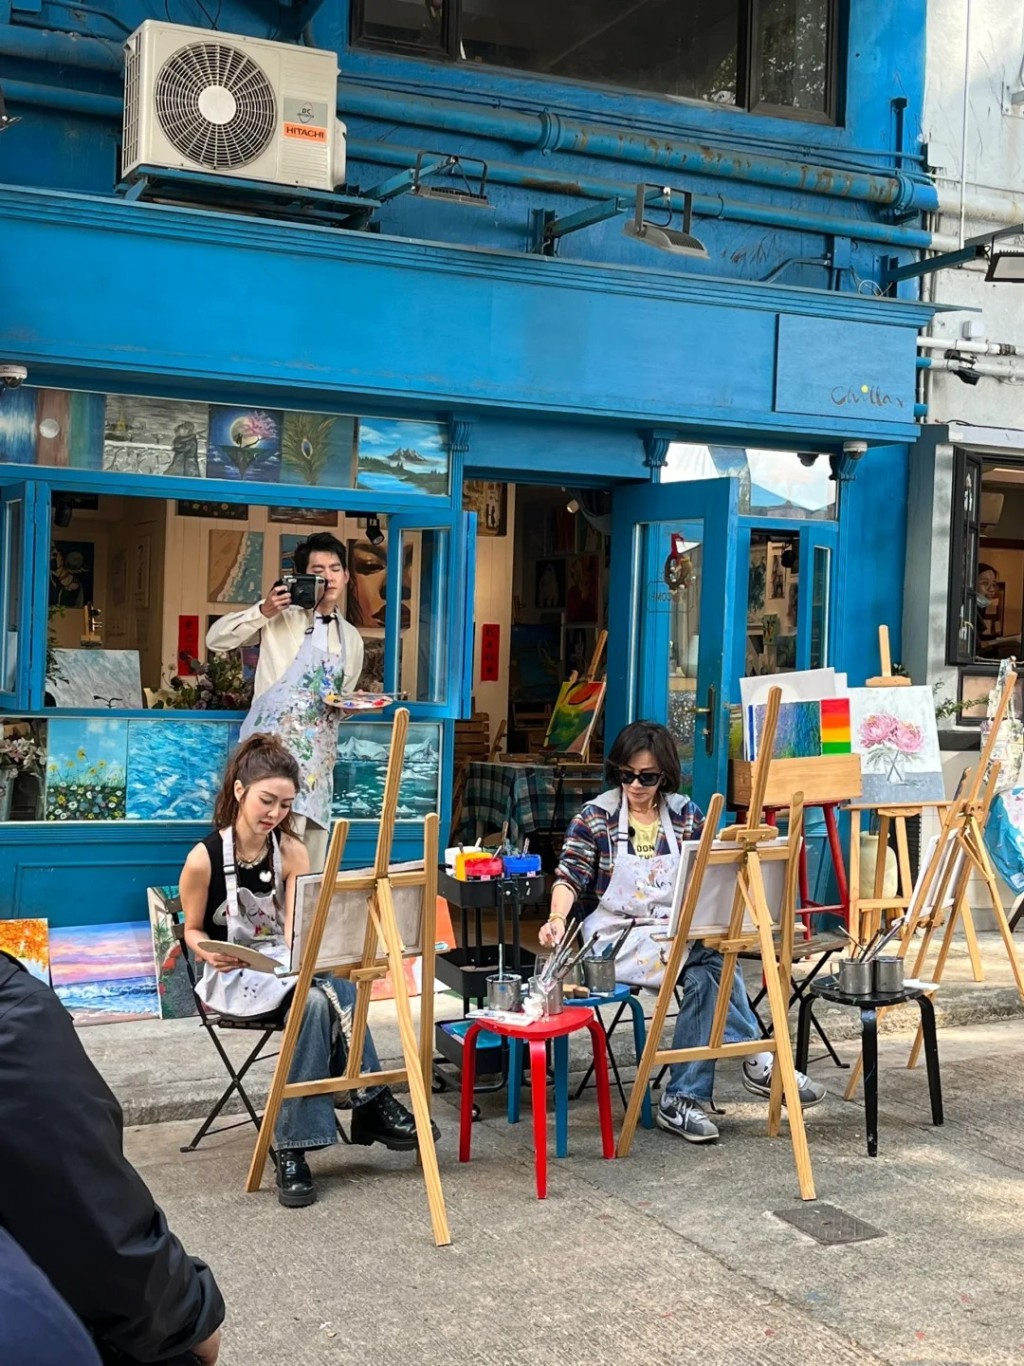 《嘉人自友約》共有六位女嘉賓，近日有網民見到劉嘉玲與薛凱琪在香港街頭拍攝。